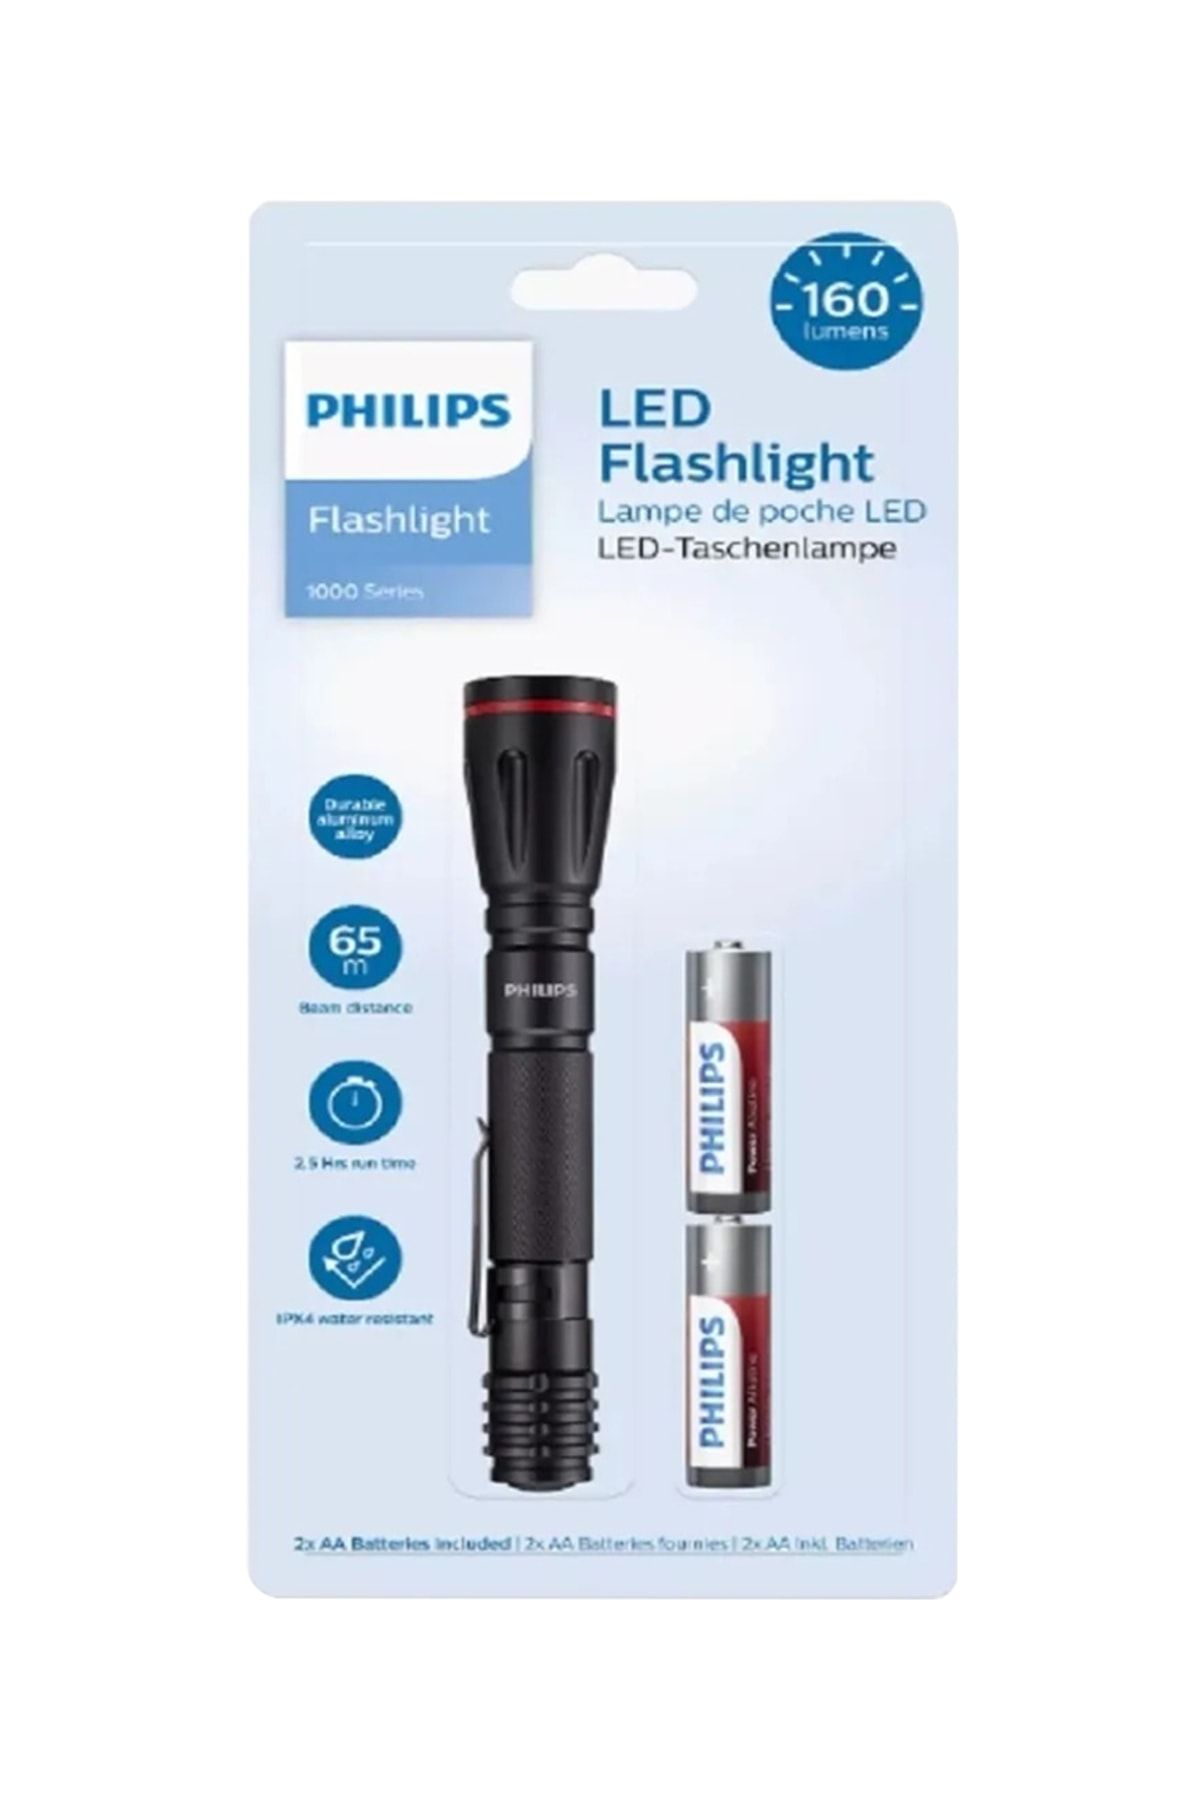 Philips Sfl1001p/10 Led Flashlight 160 Lumen Taşınabilir Pilli El Feneri Suya Toza Dayanıklı 65 Metre